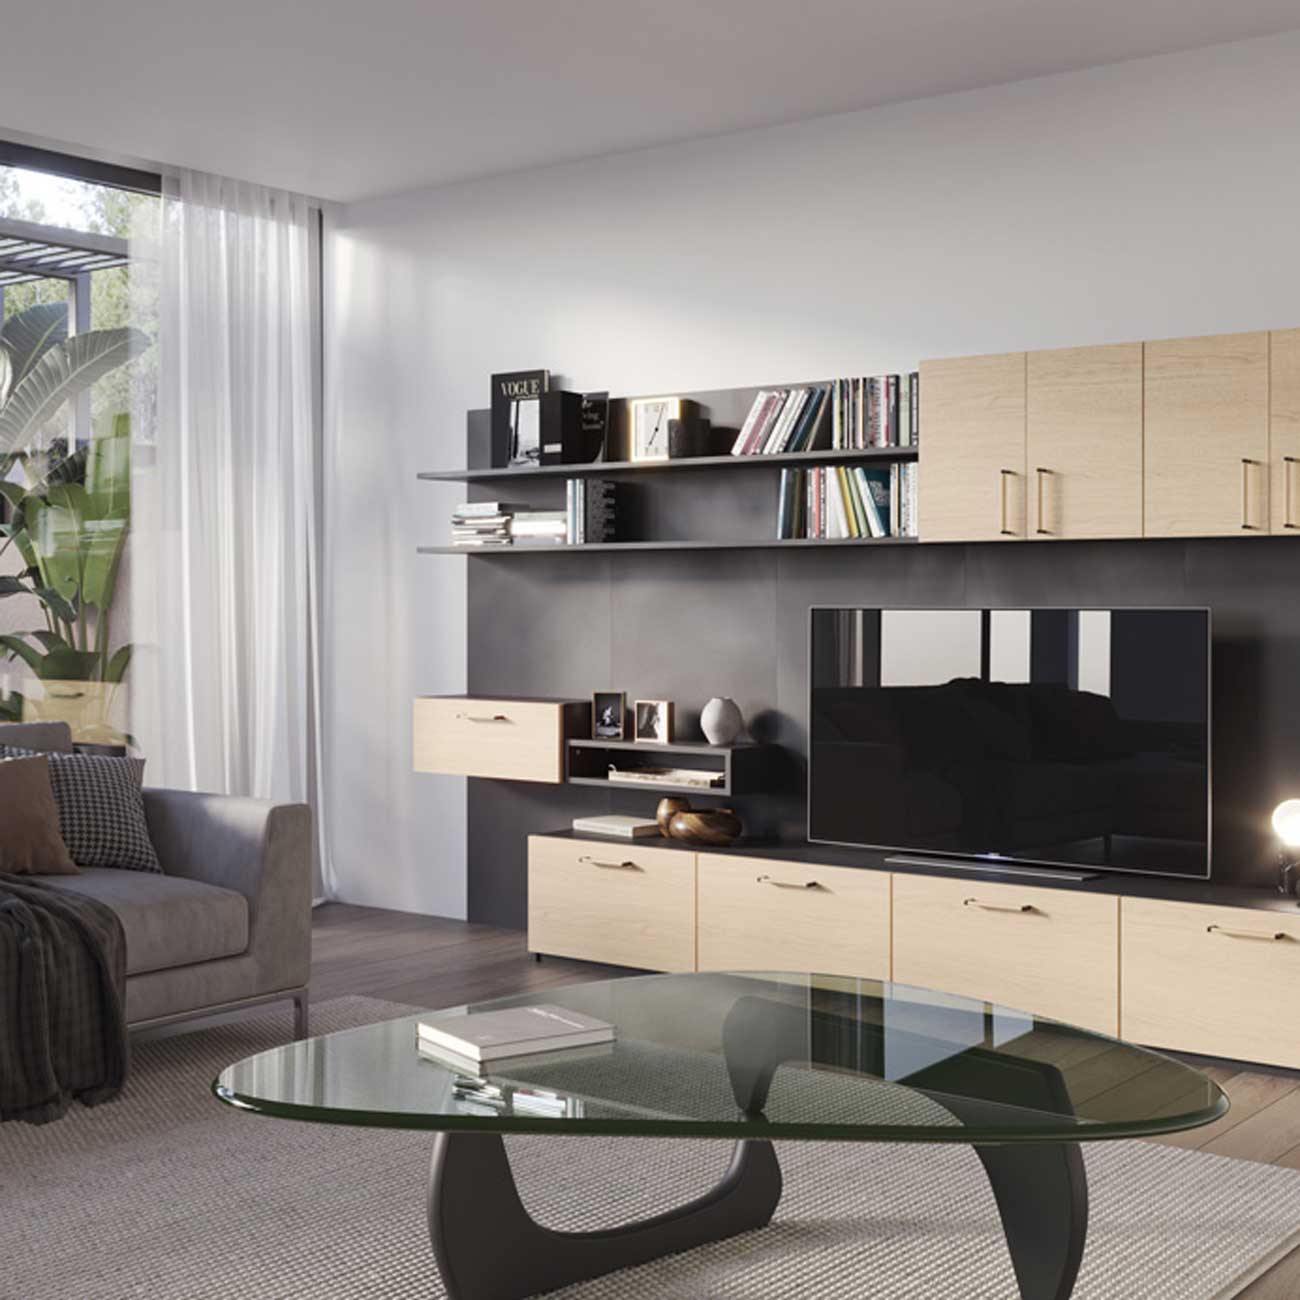 Image 3D réaliste d'un salon avec meuble télé.